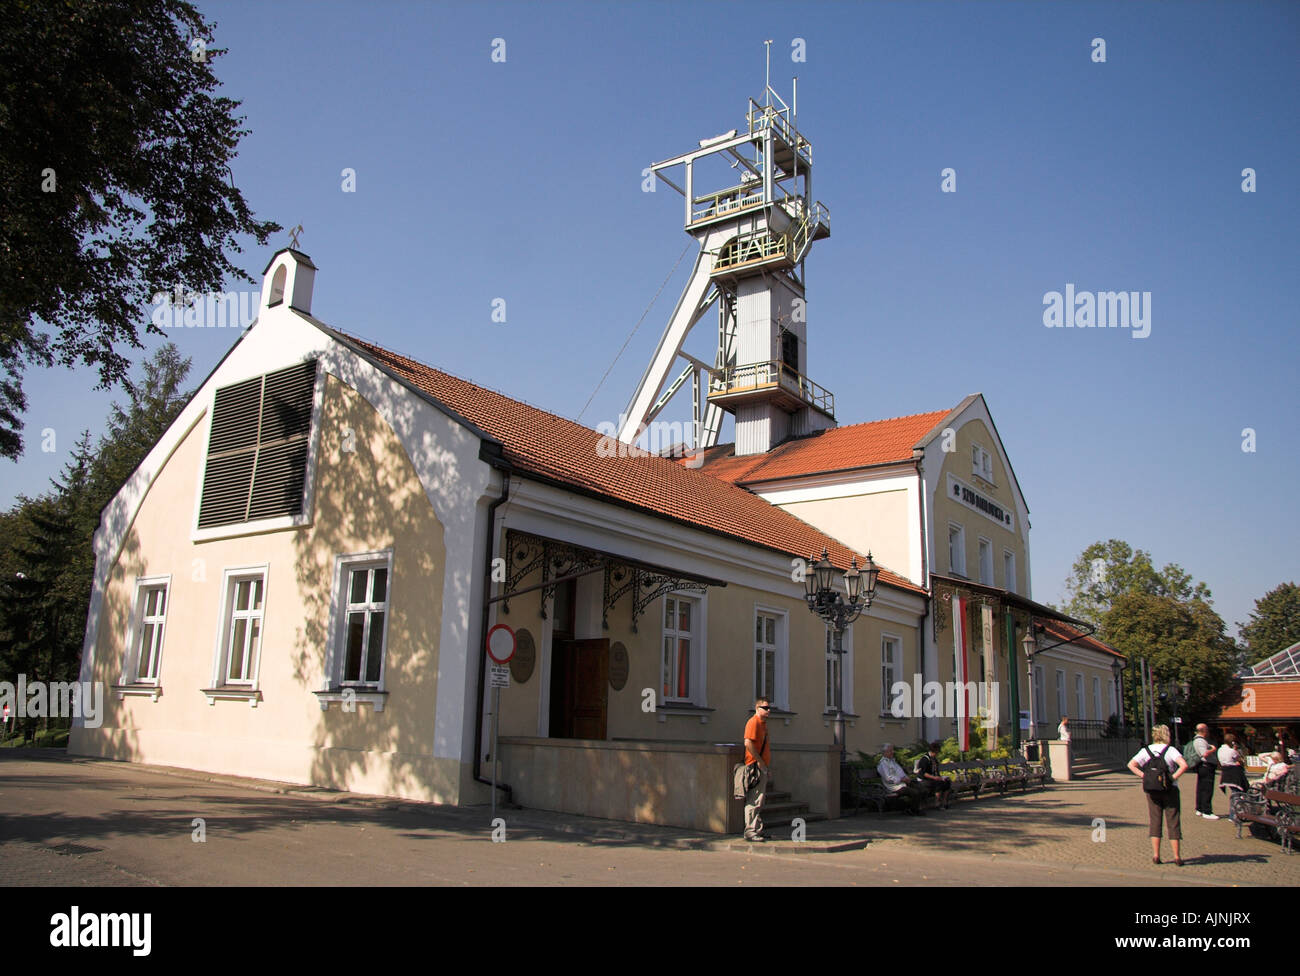 Wieliczka Salt Mine, near Krakow, Poland, Europe Stock Photo